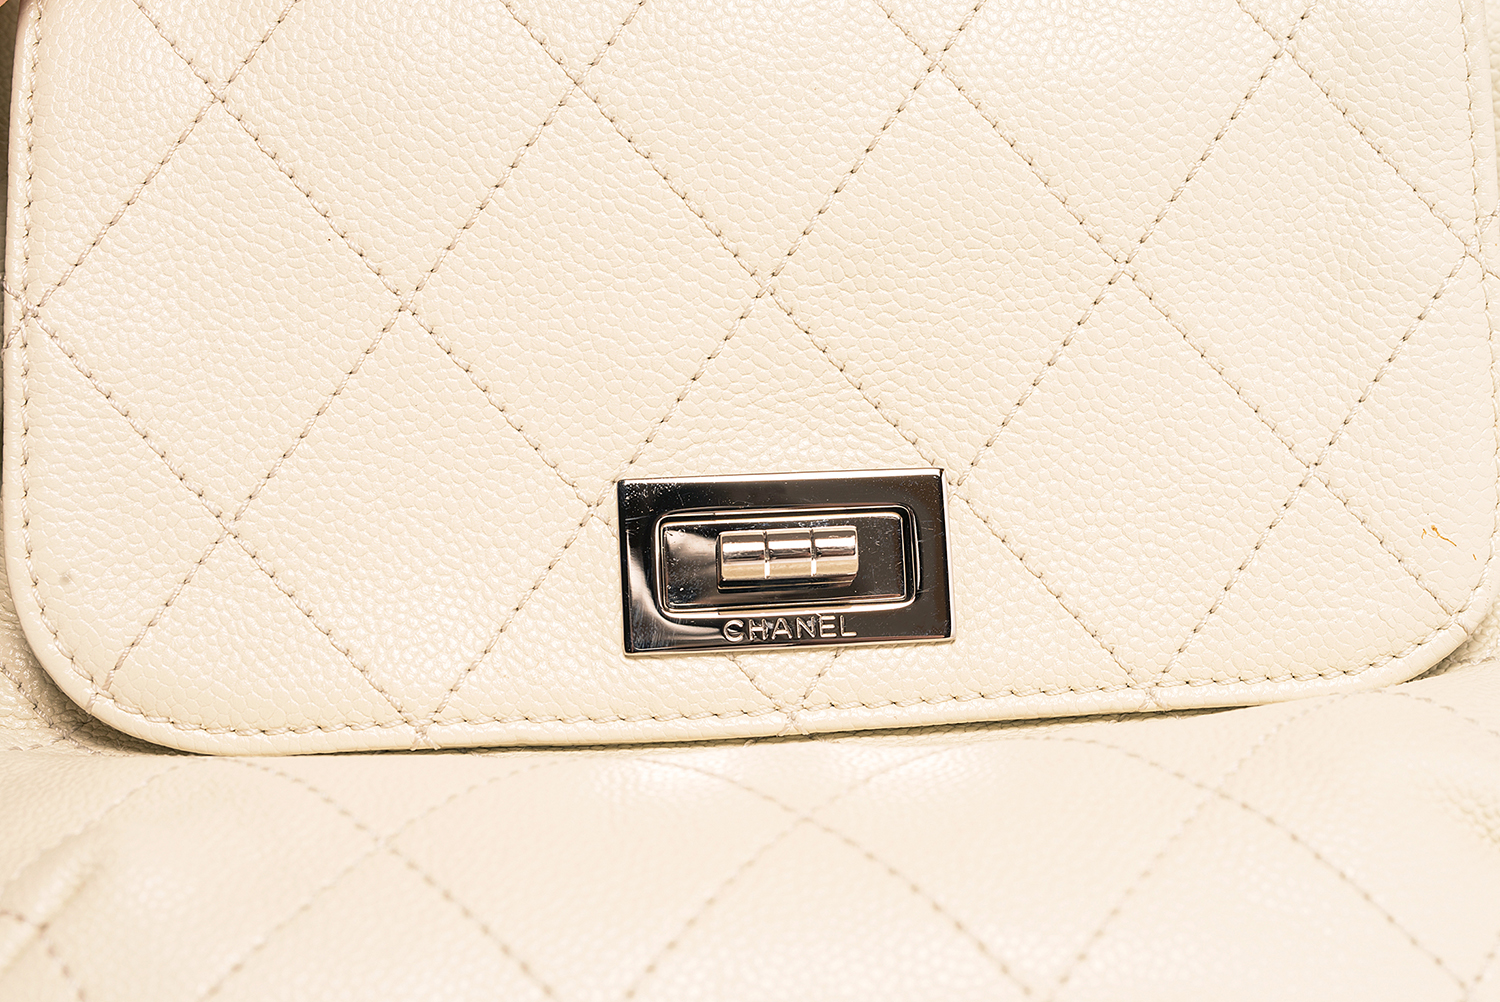 Sac Chanel Cabas Pocket in the city mademoiselle Authentique d'occasion en cuir grainé couleur blanc cassé